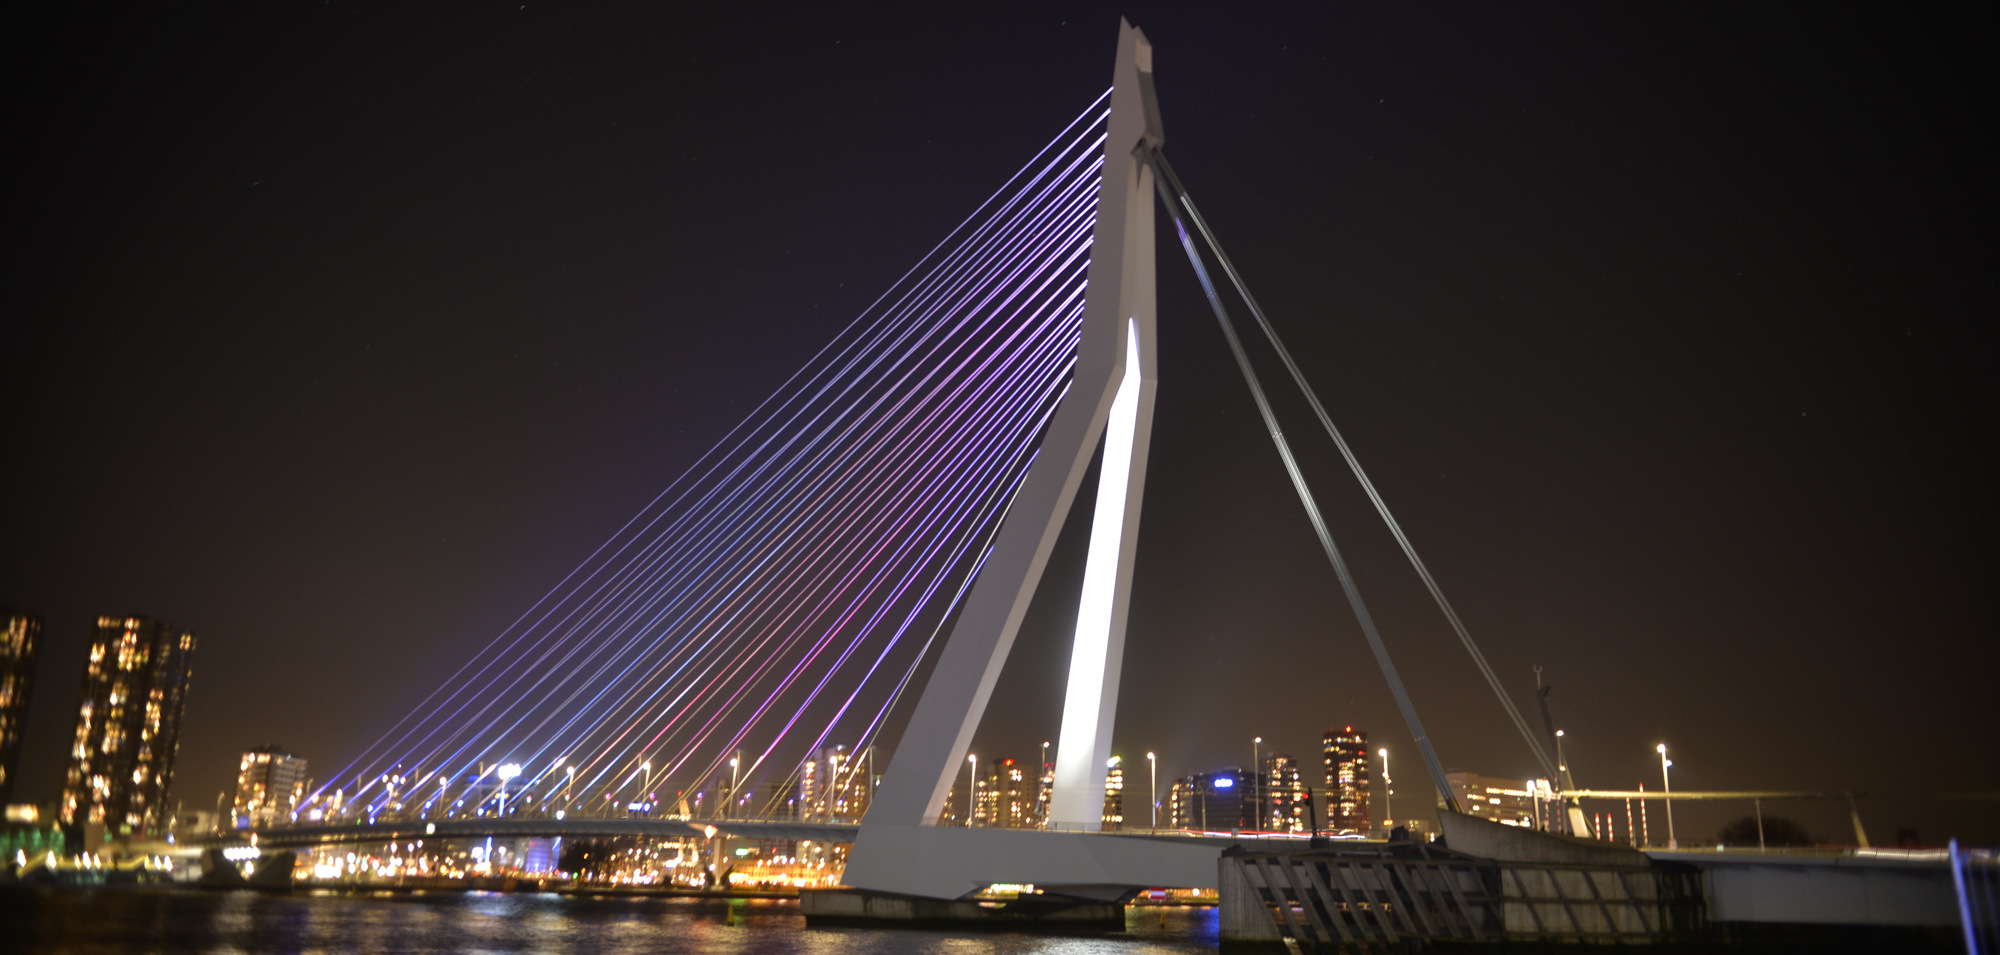 New LED lighting scheme for the Erasmus Bridge